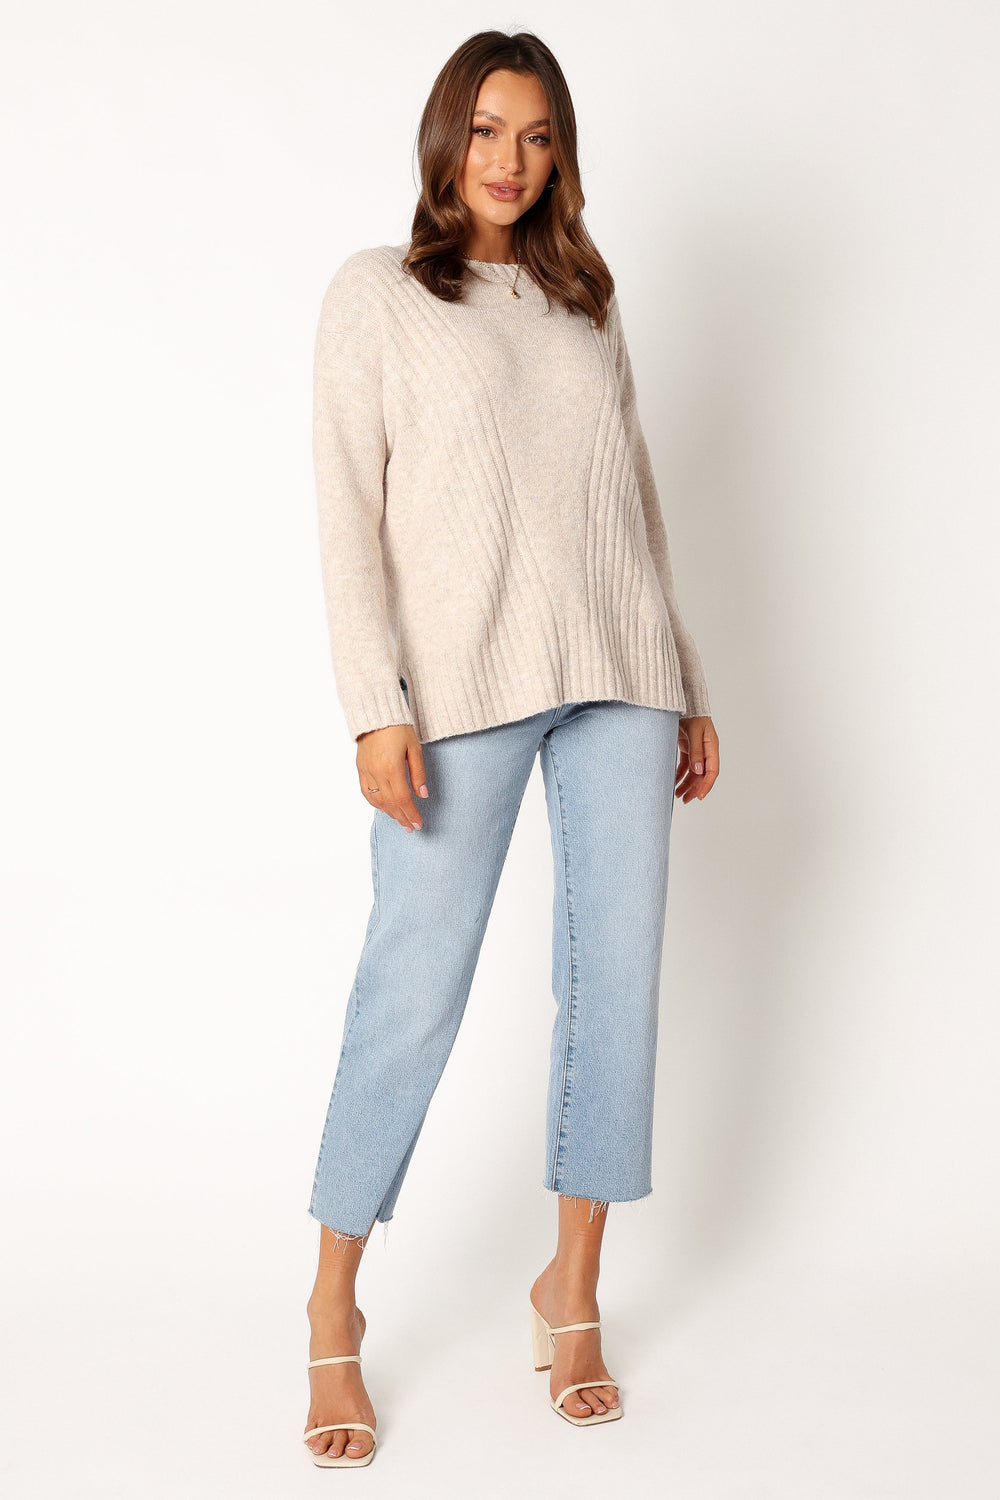 KNITWEAR @Meilani Textured Knit Sweater - Oatmeal